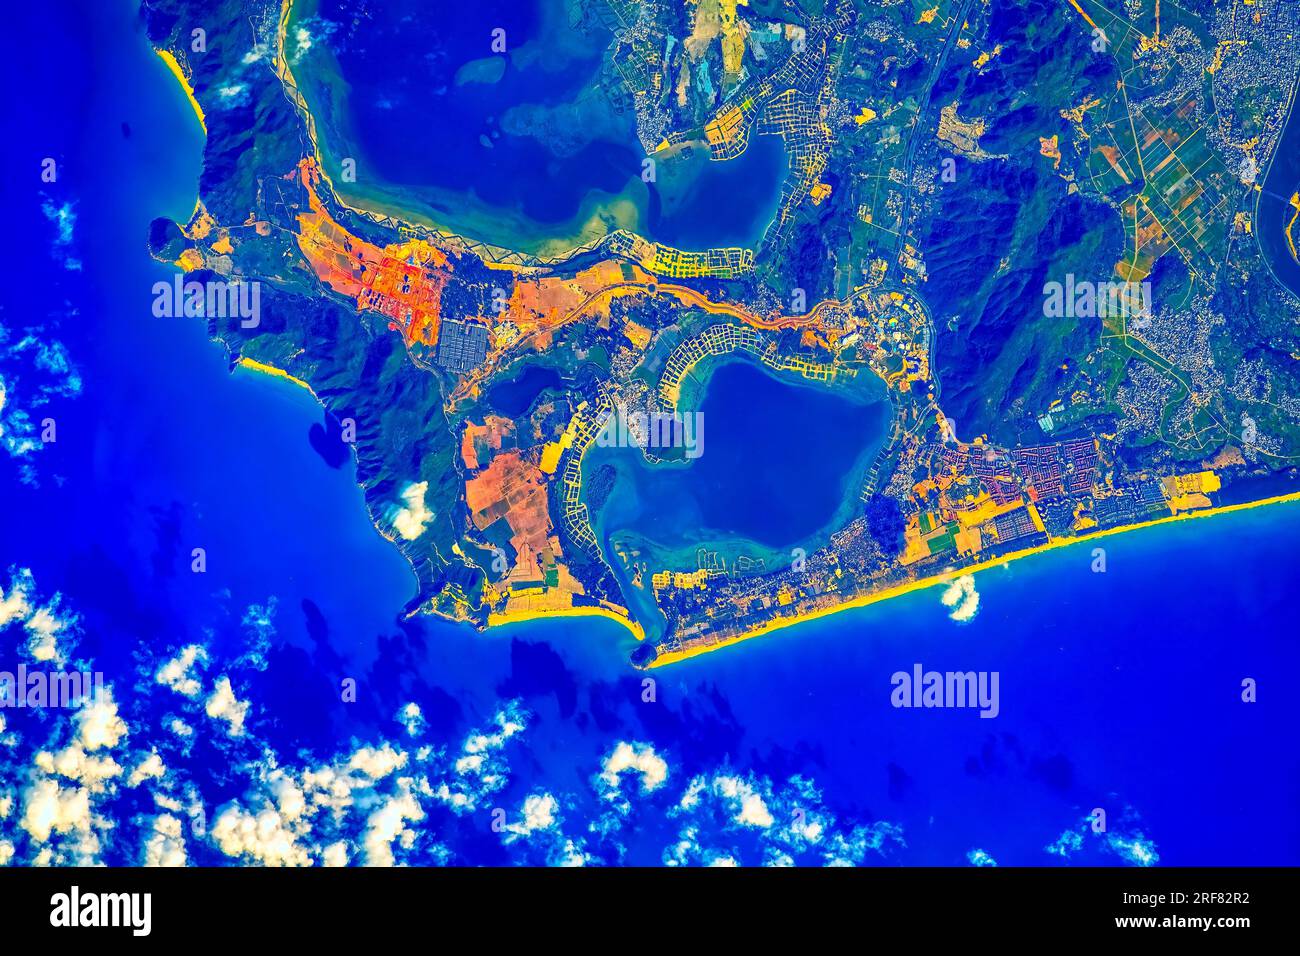 Gangmen Harbor und die Fischfarmen der Insel Hainan in Südchina. Digitale Verbesserung eines von der NASA bereitgestellten Bildes Stockfoto